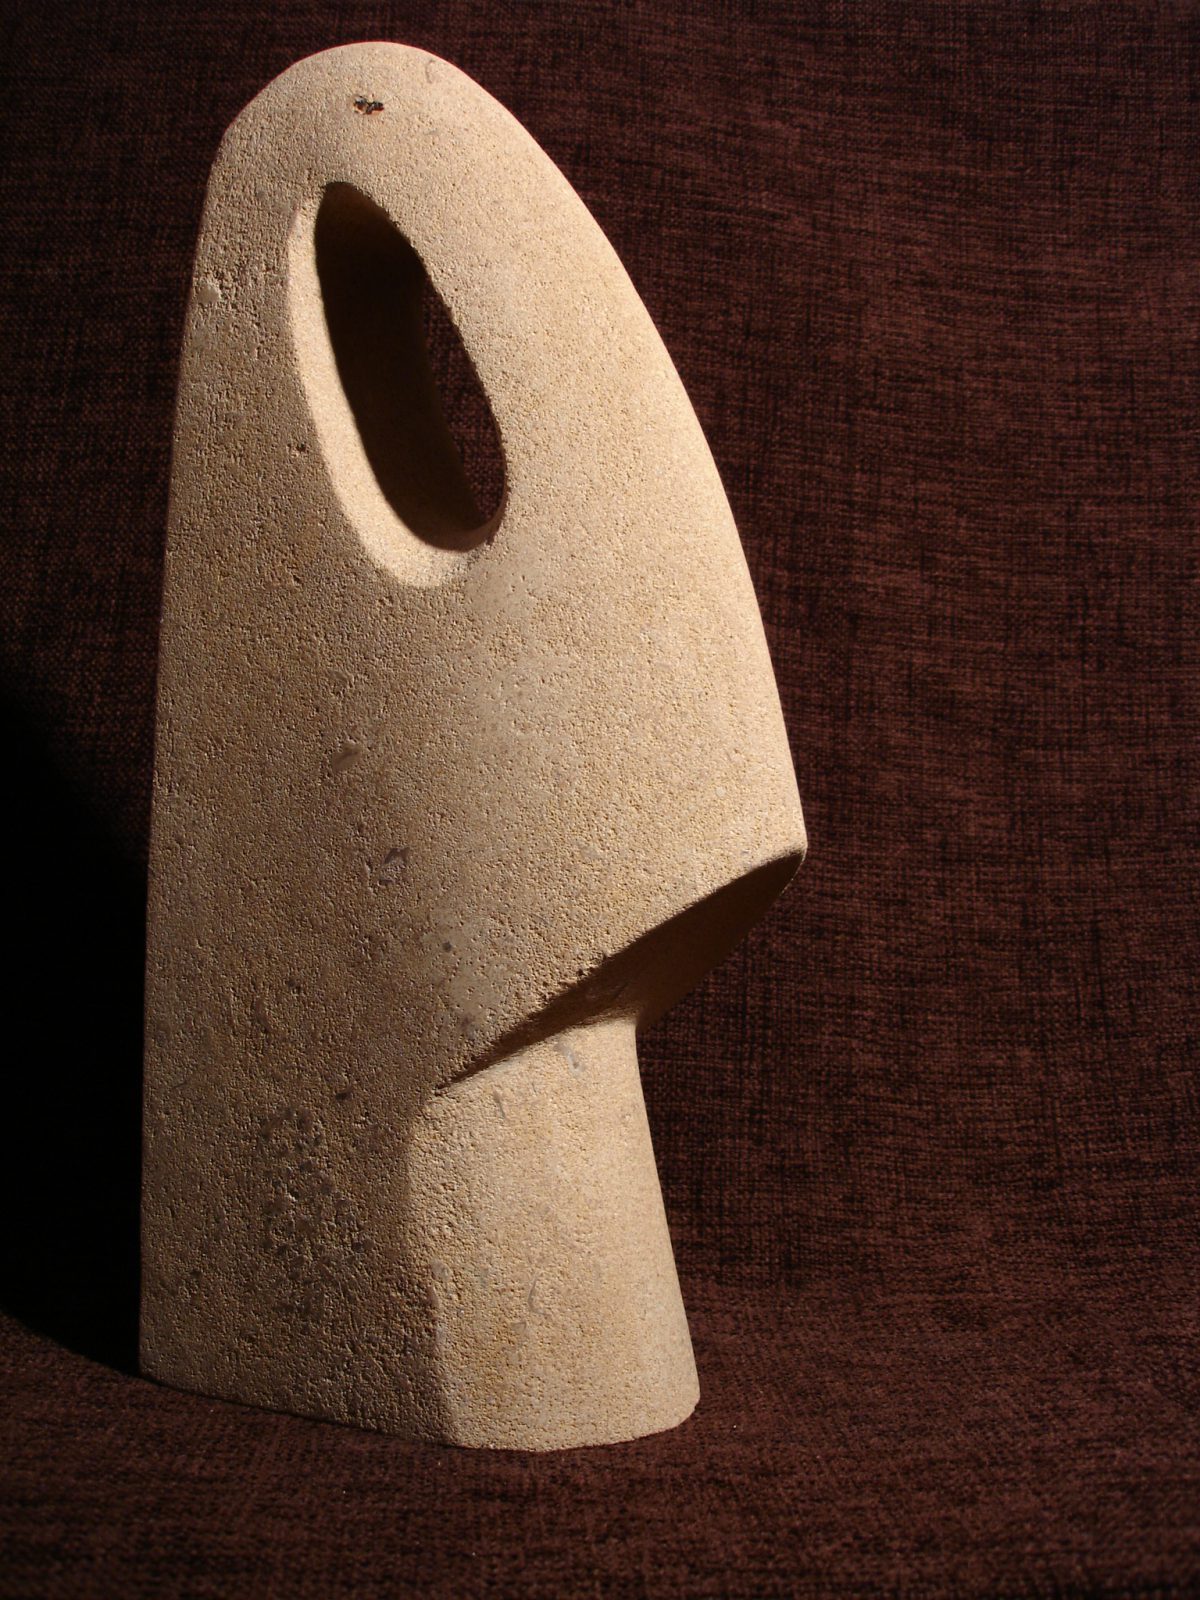 Head - 45cm, Bath Limestone